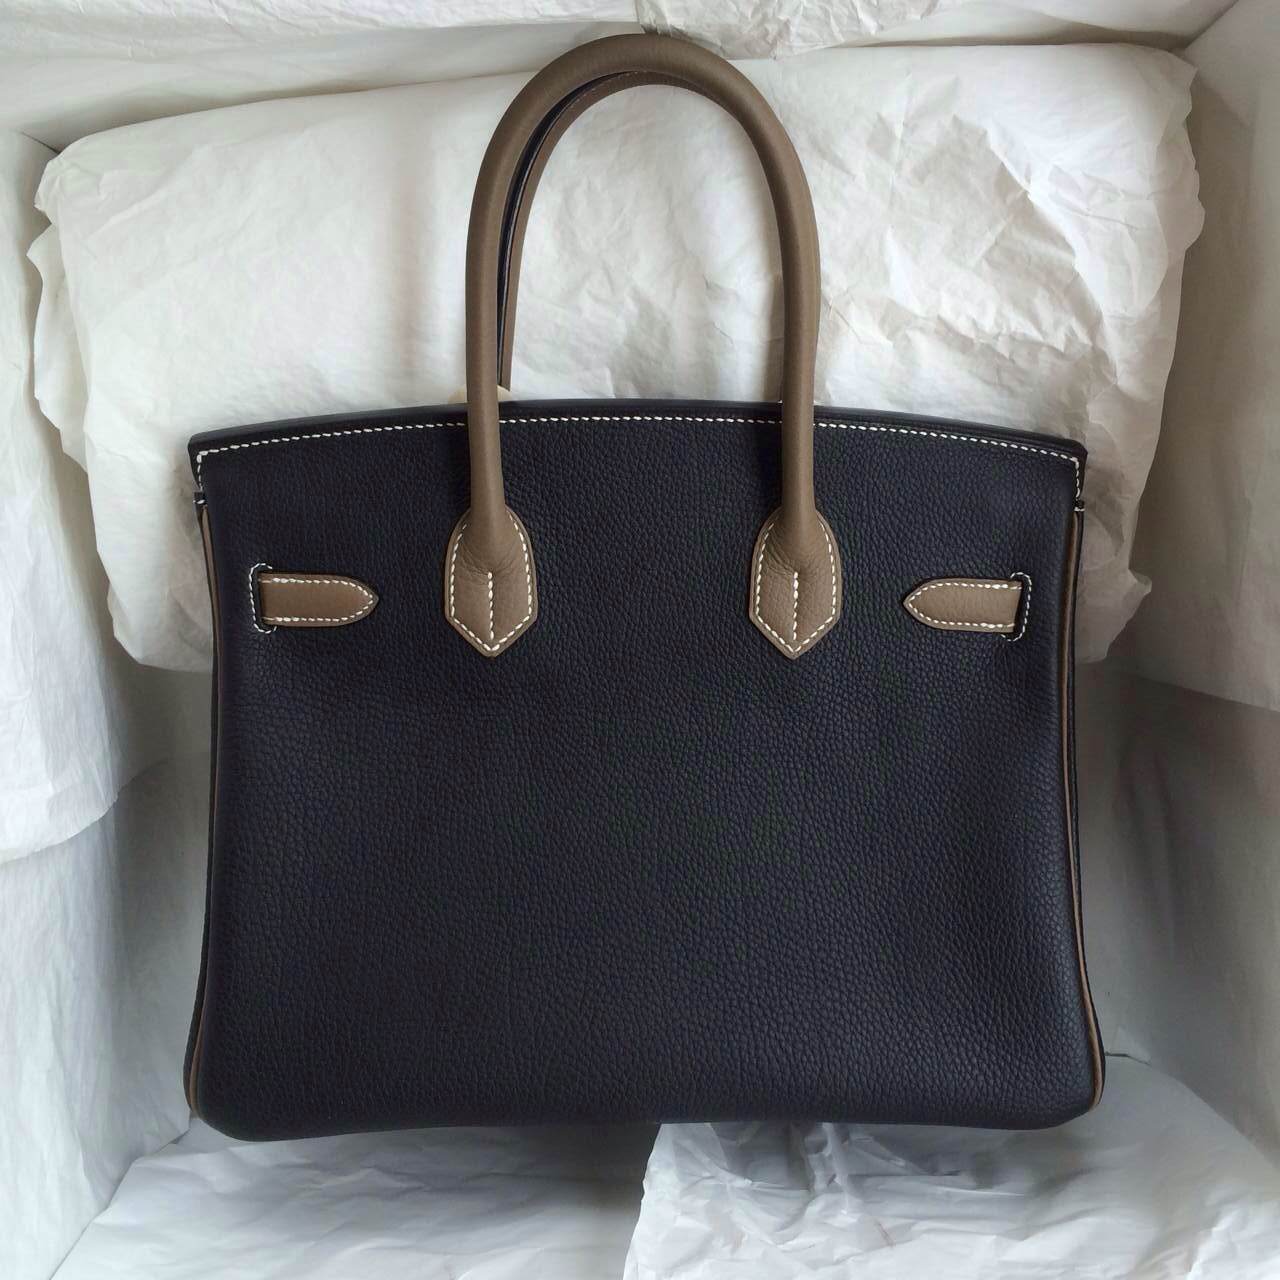 Wholesale Birkin Bag Black/Etoupe Grey France Togo Leather Gold Hardware